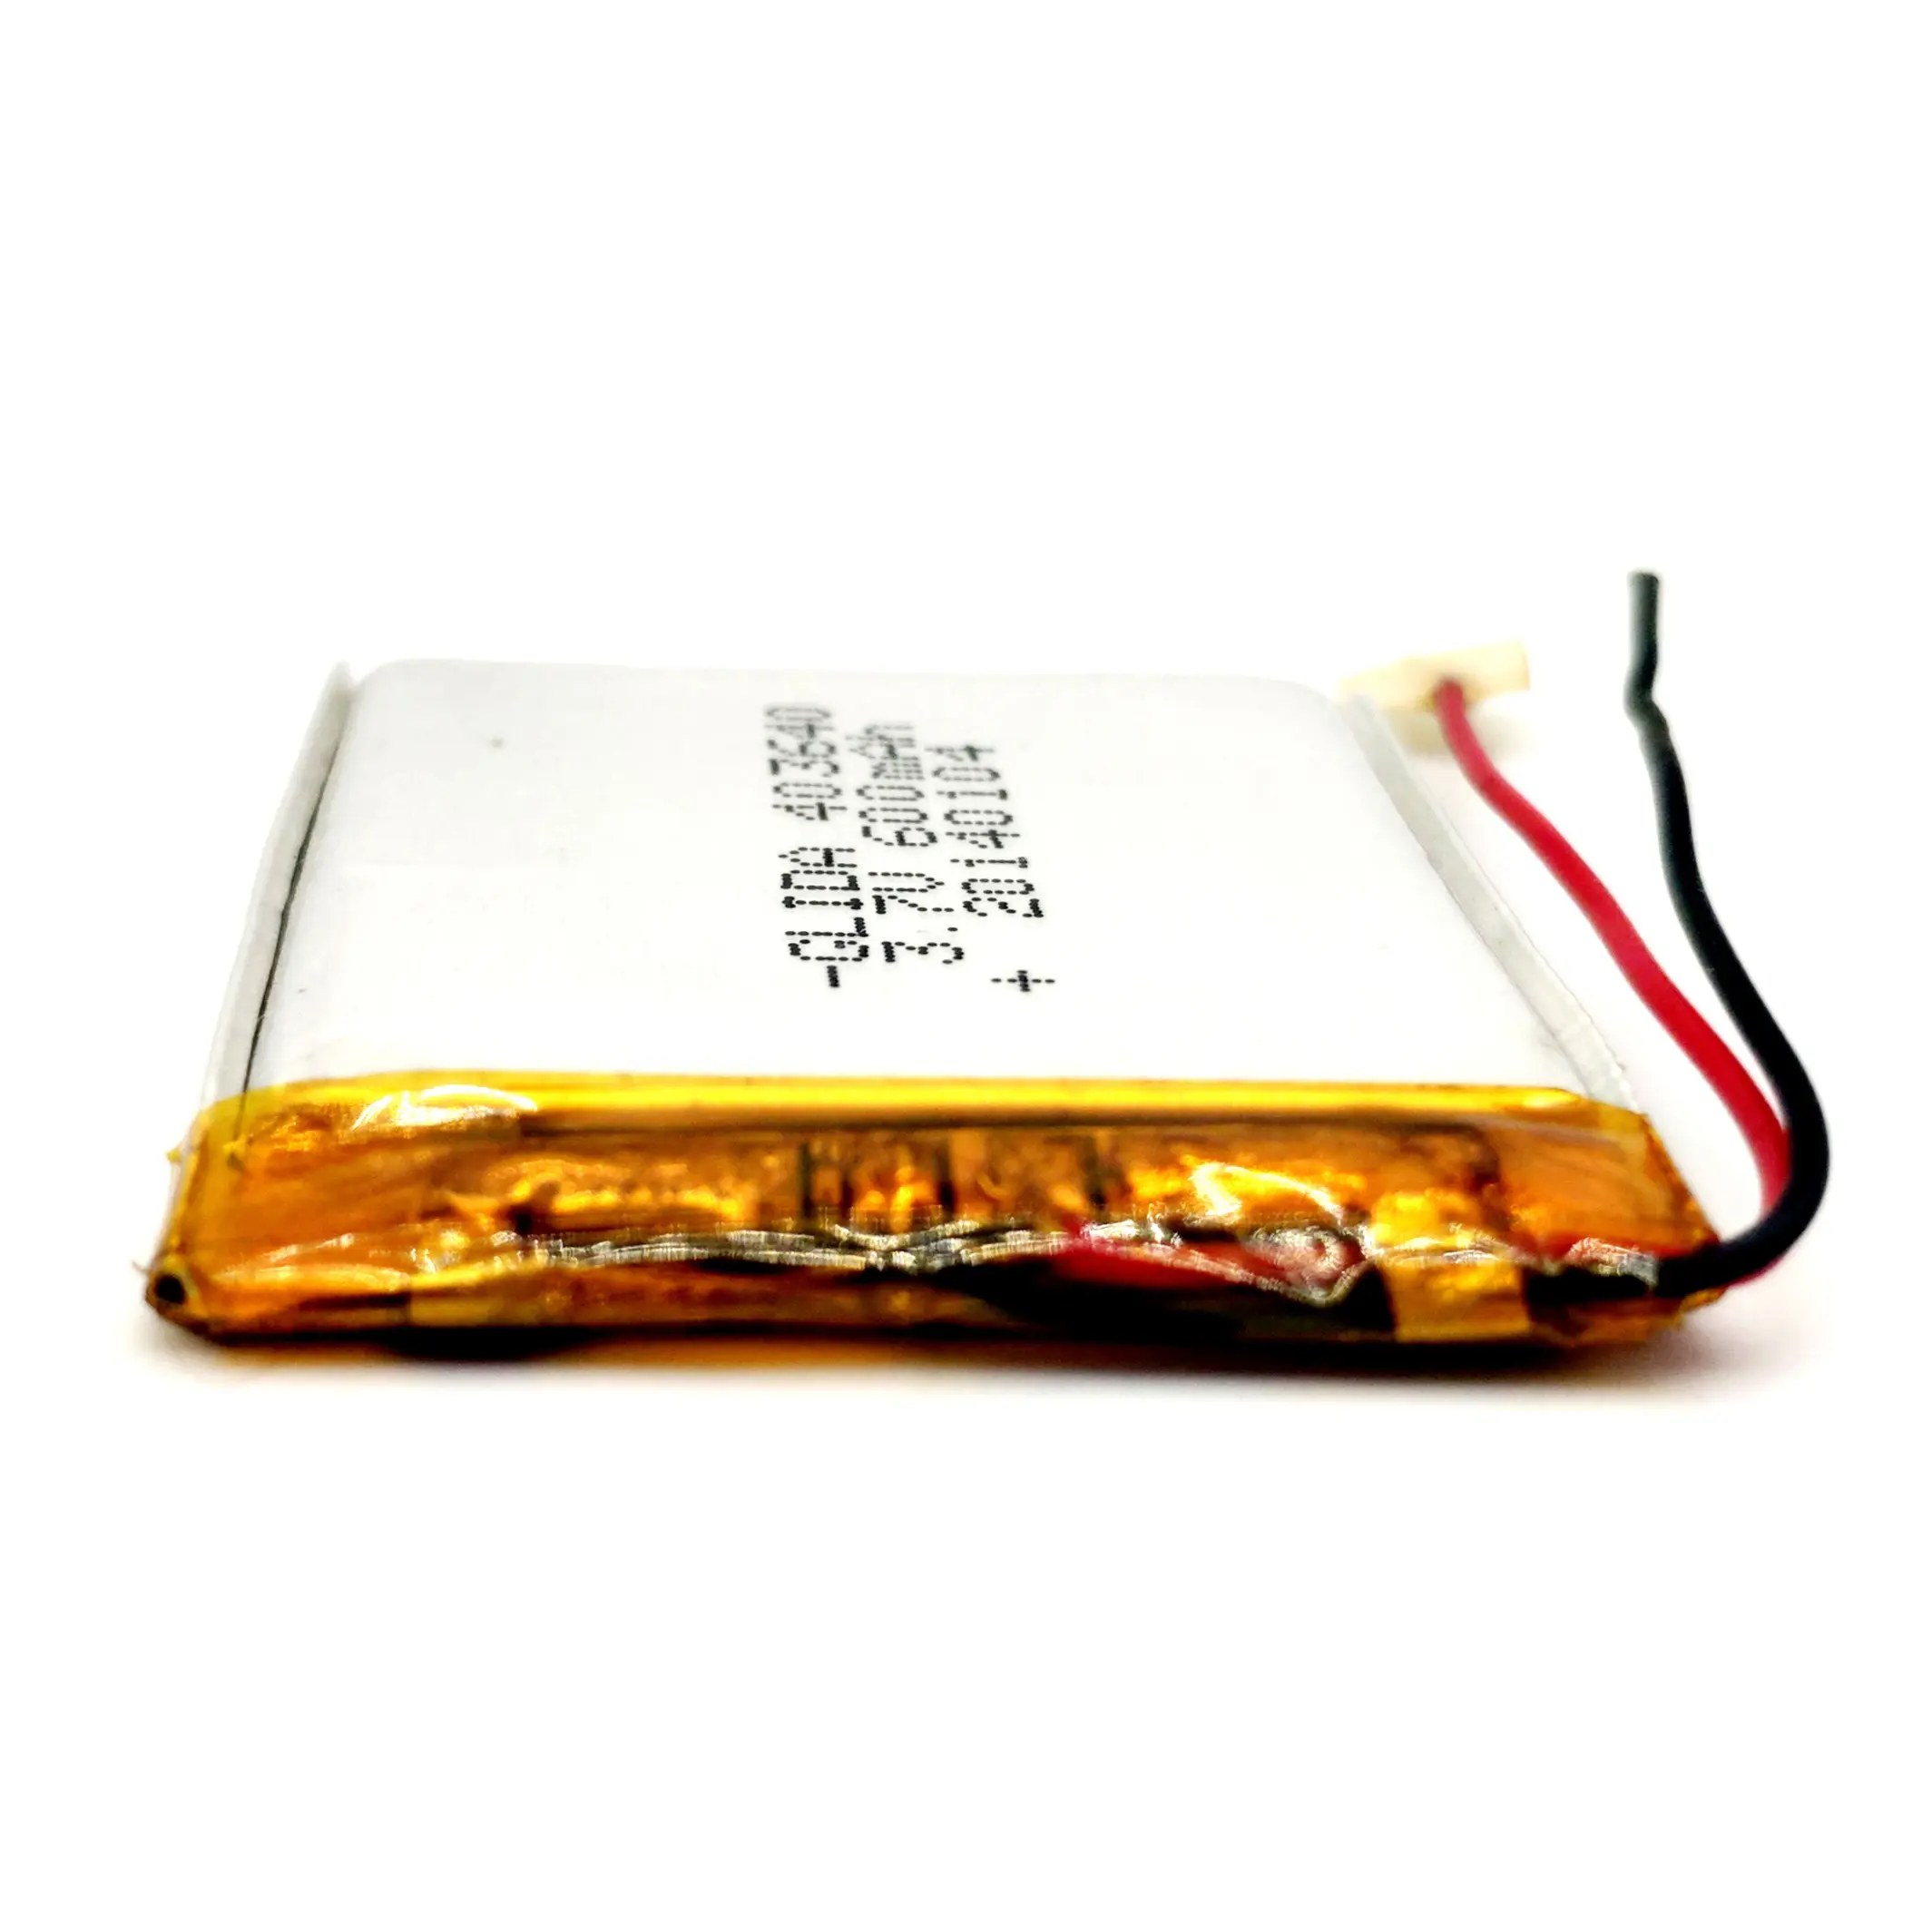 Oplaadbare Lithium Polymeer Batterij 603040 3.7V 600Mah Li-Po Batterijen Prismatische IEC62133 UL2054 Rohs Ce Un38.8 Msds custom